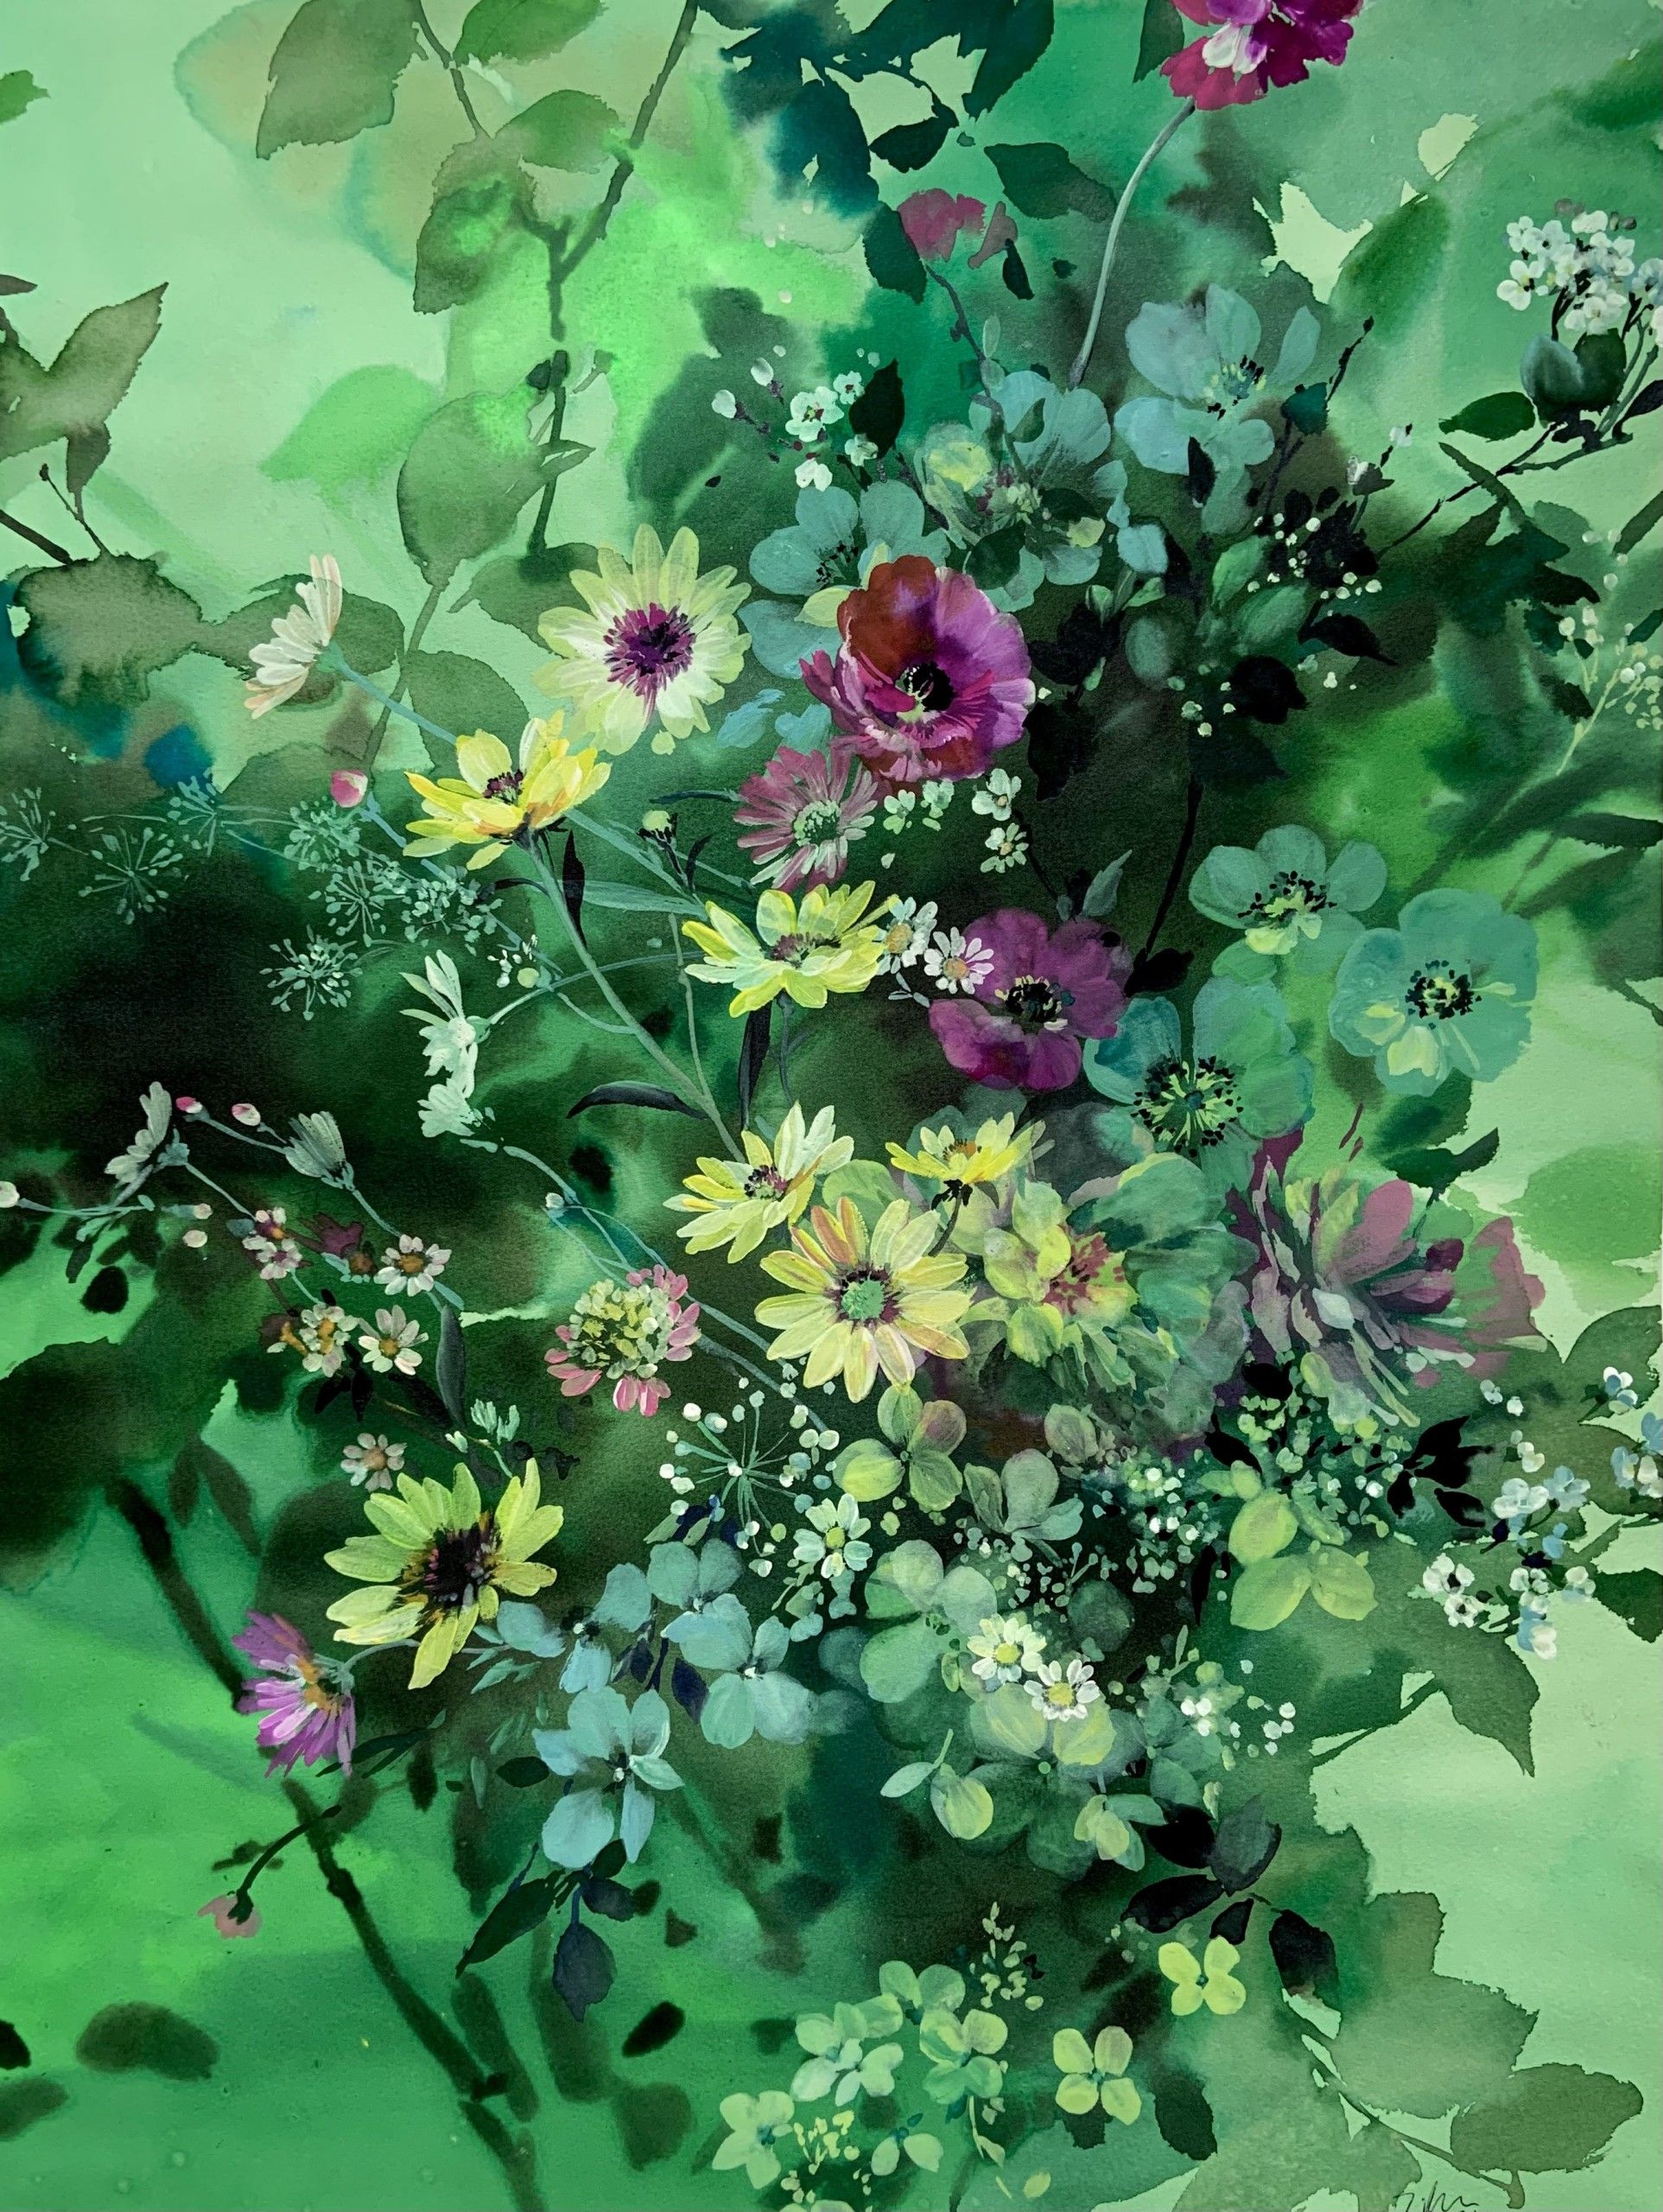 Carpet of Flowers by Jo Haran